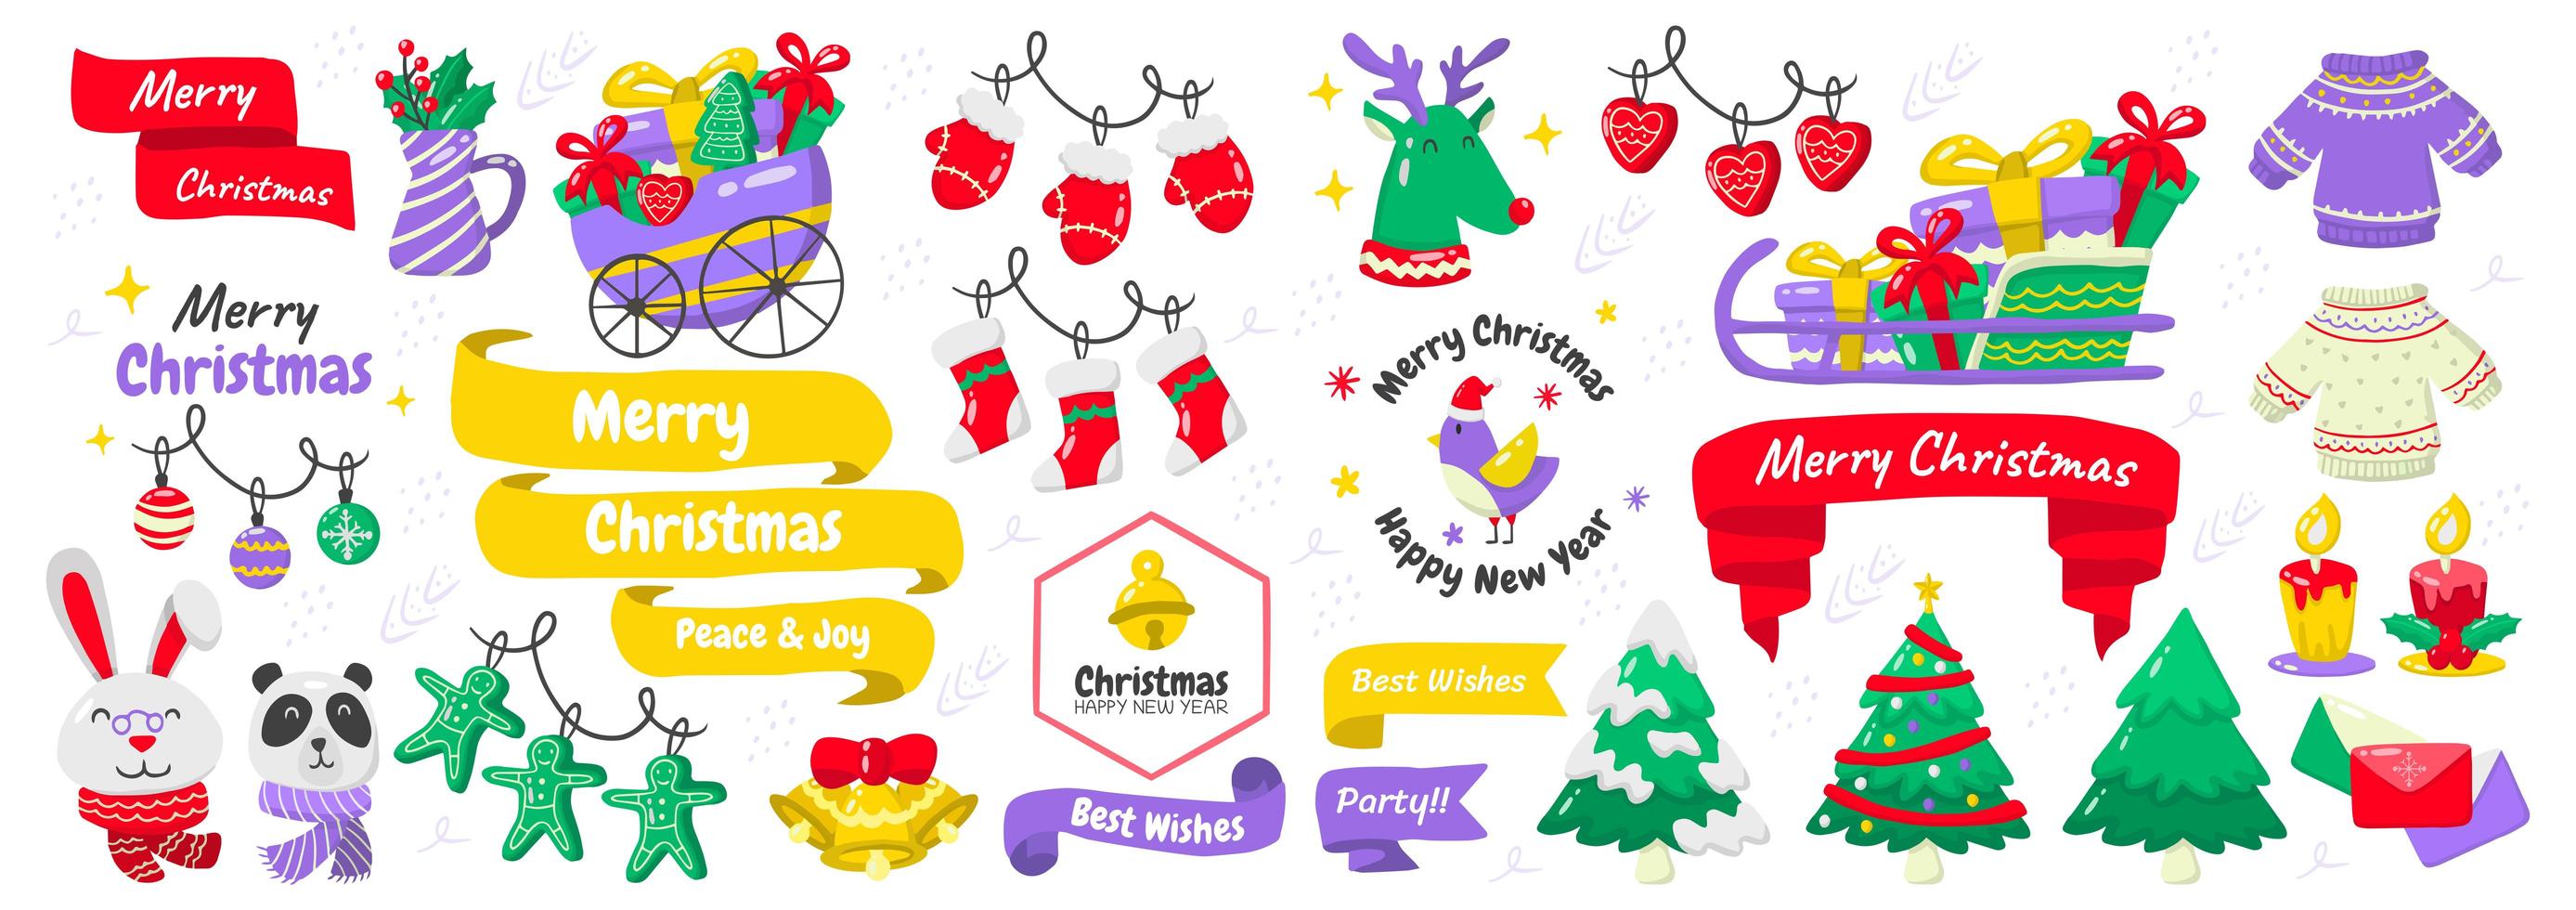 Weihnachtselemente und Embleme gesetzt vektor